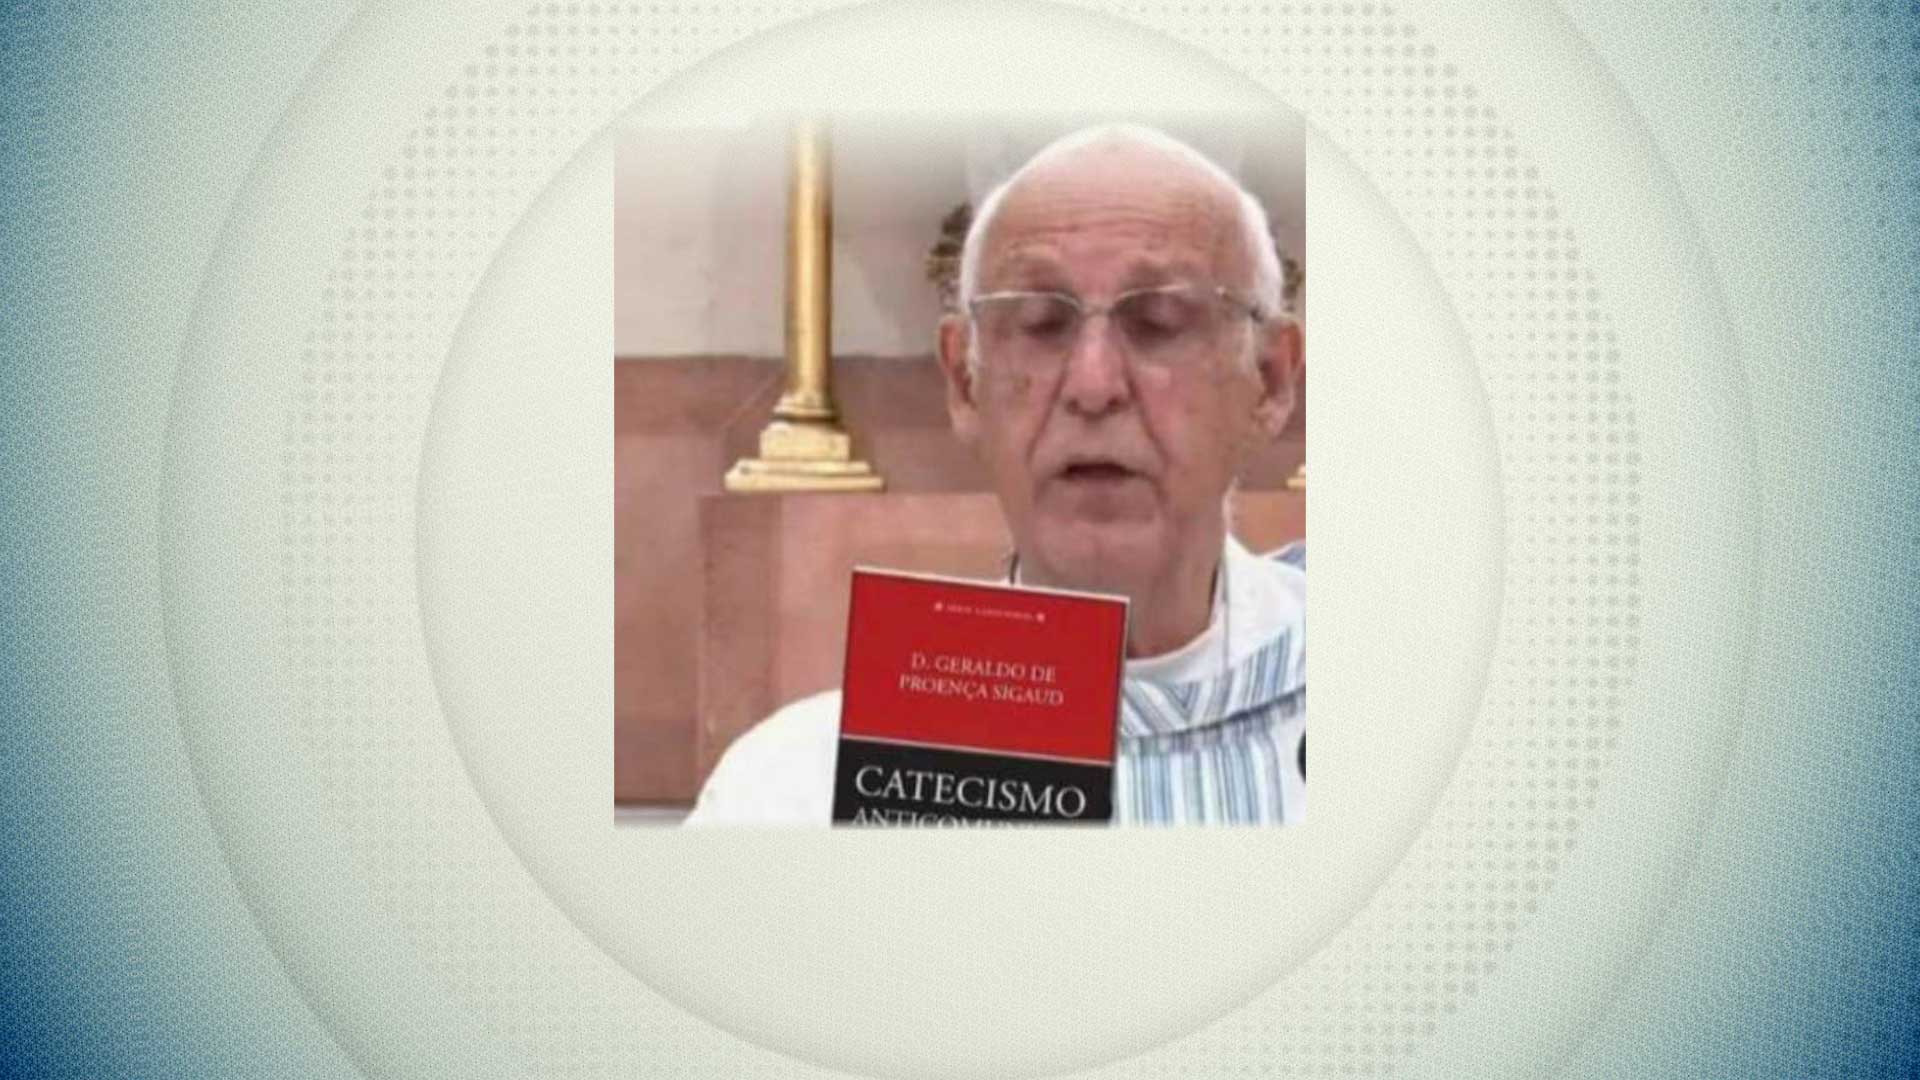 É falsa a imagem em que o padre Lancelotti aparece com livro religioso anticomunista